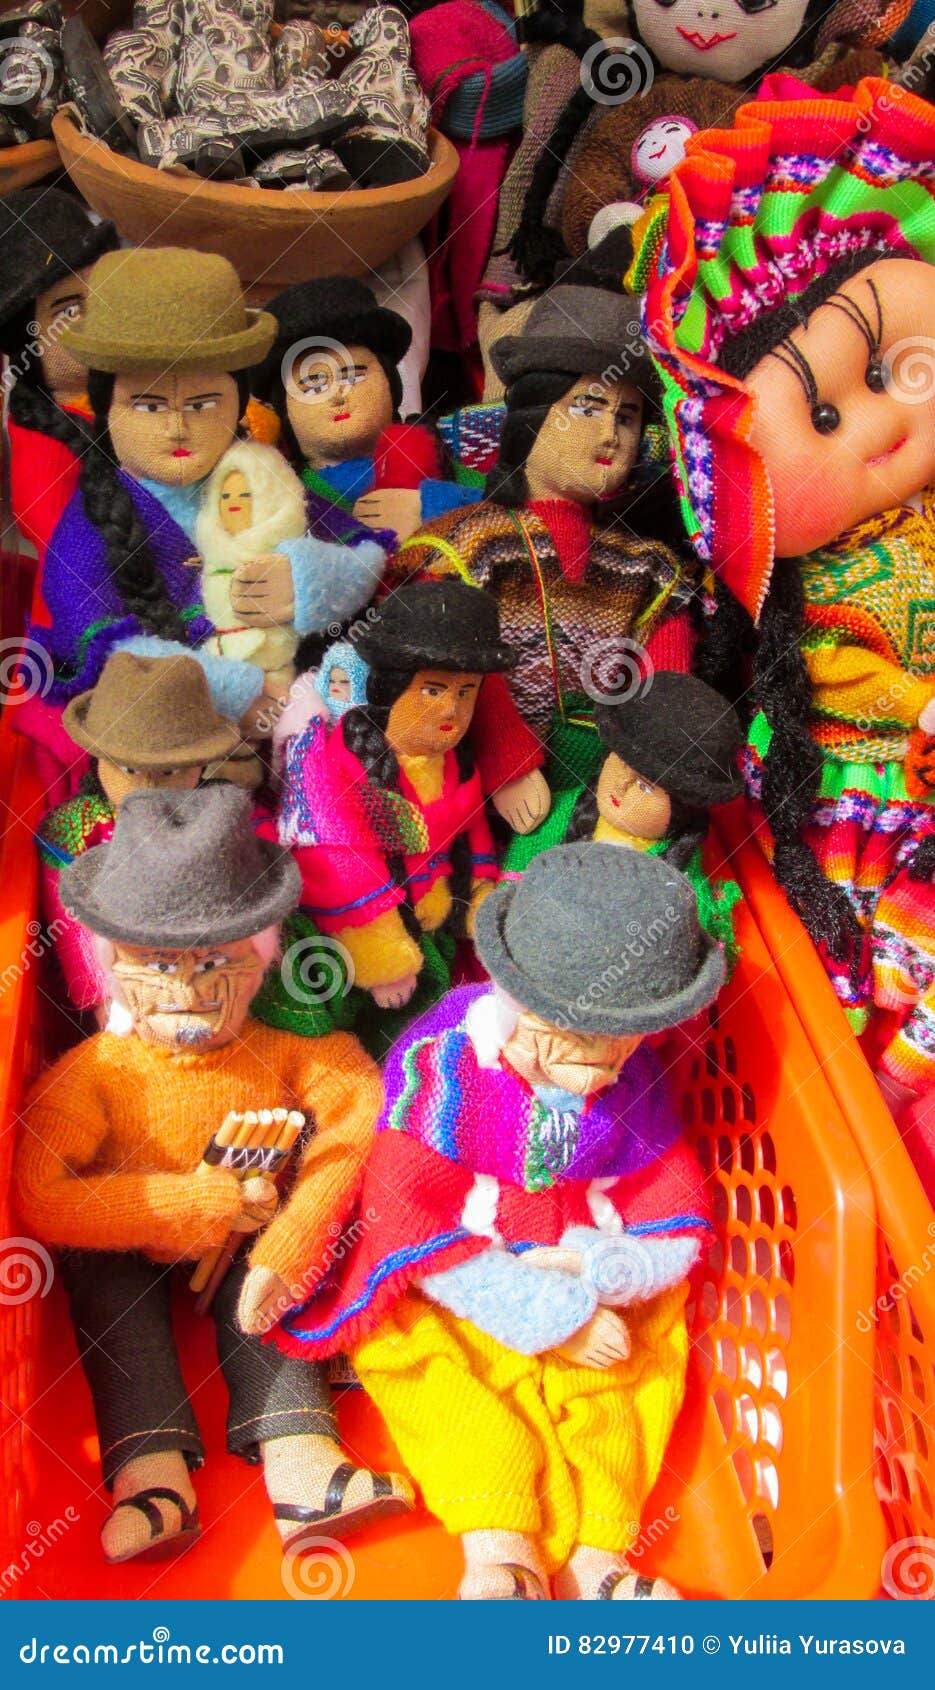 dolls at mercado de las brujas in bolivia